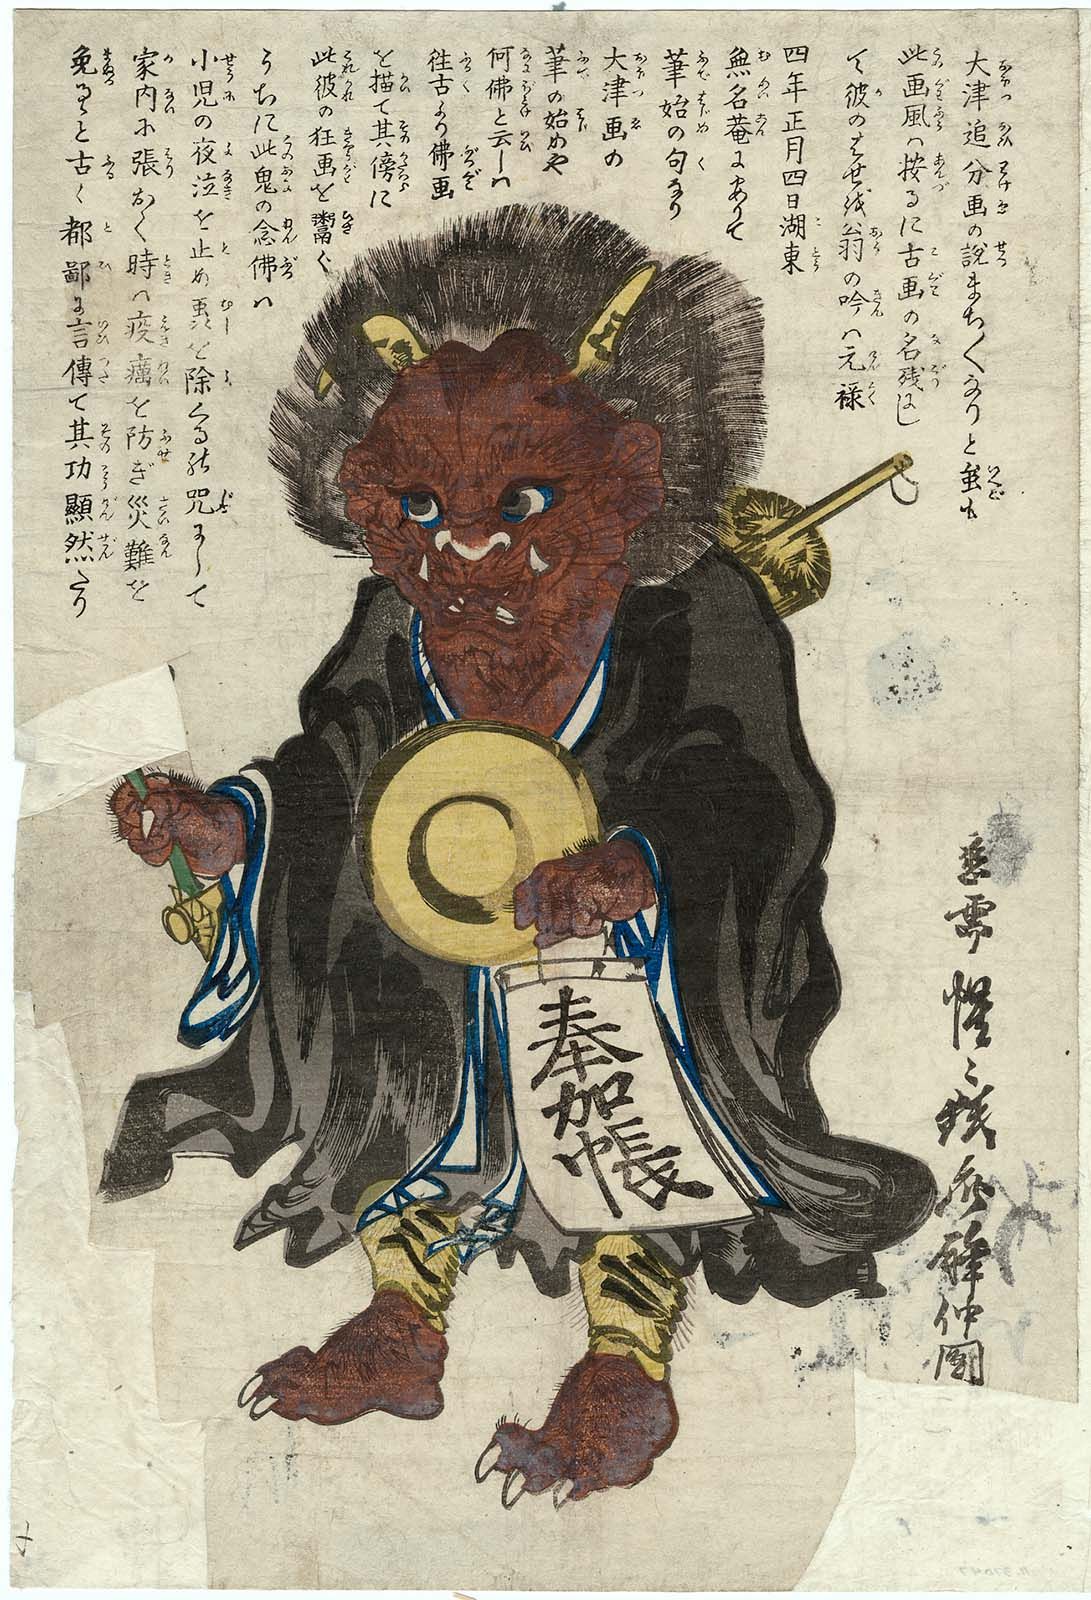 Ôtsu-e Figur: Dämon konvertiert zum Buddhismus (sehr katzenhaft) by Kawanabe Kyōsai - um 1860 - 35.8 x 24.3 cm Museum of Fine Arts Boston